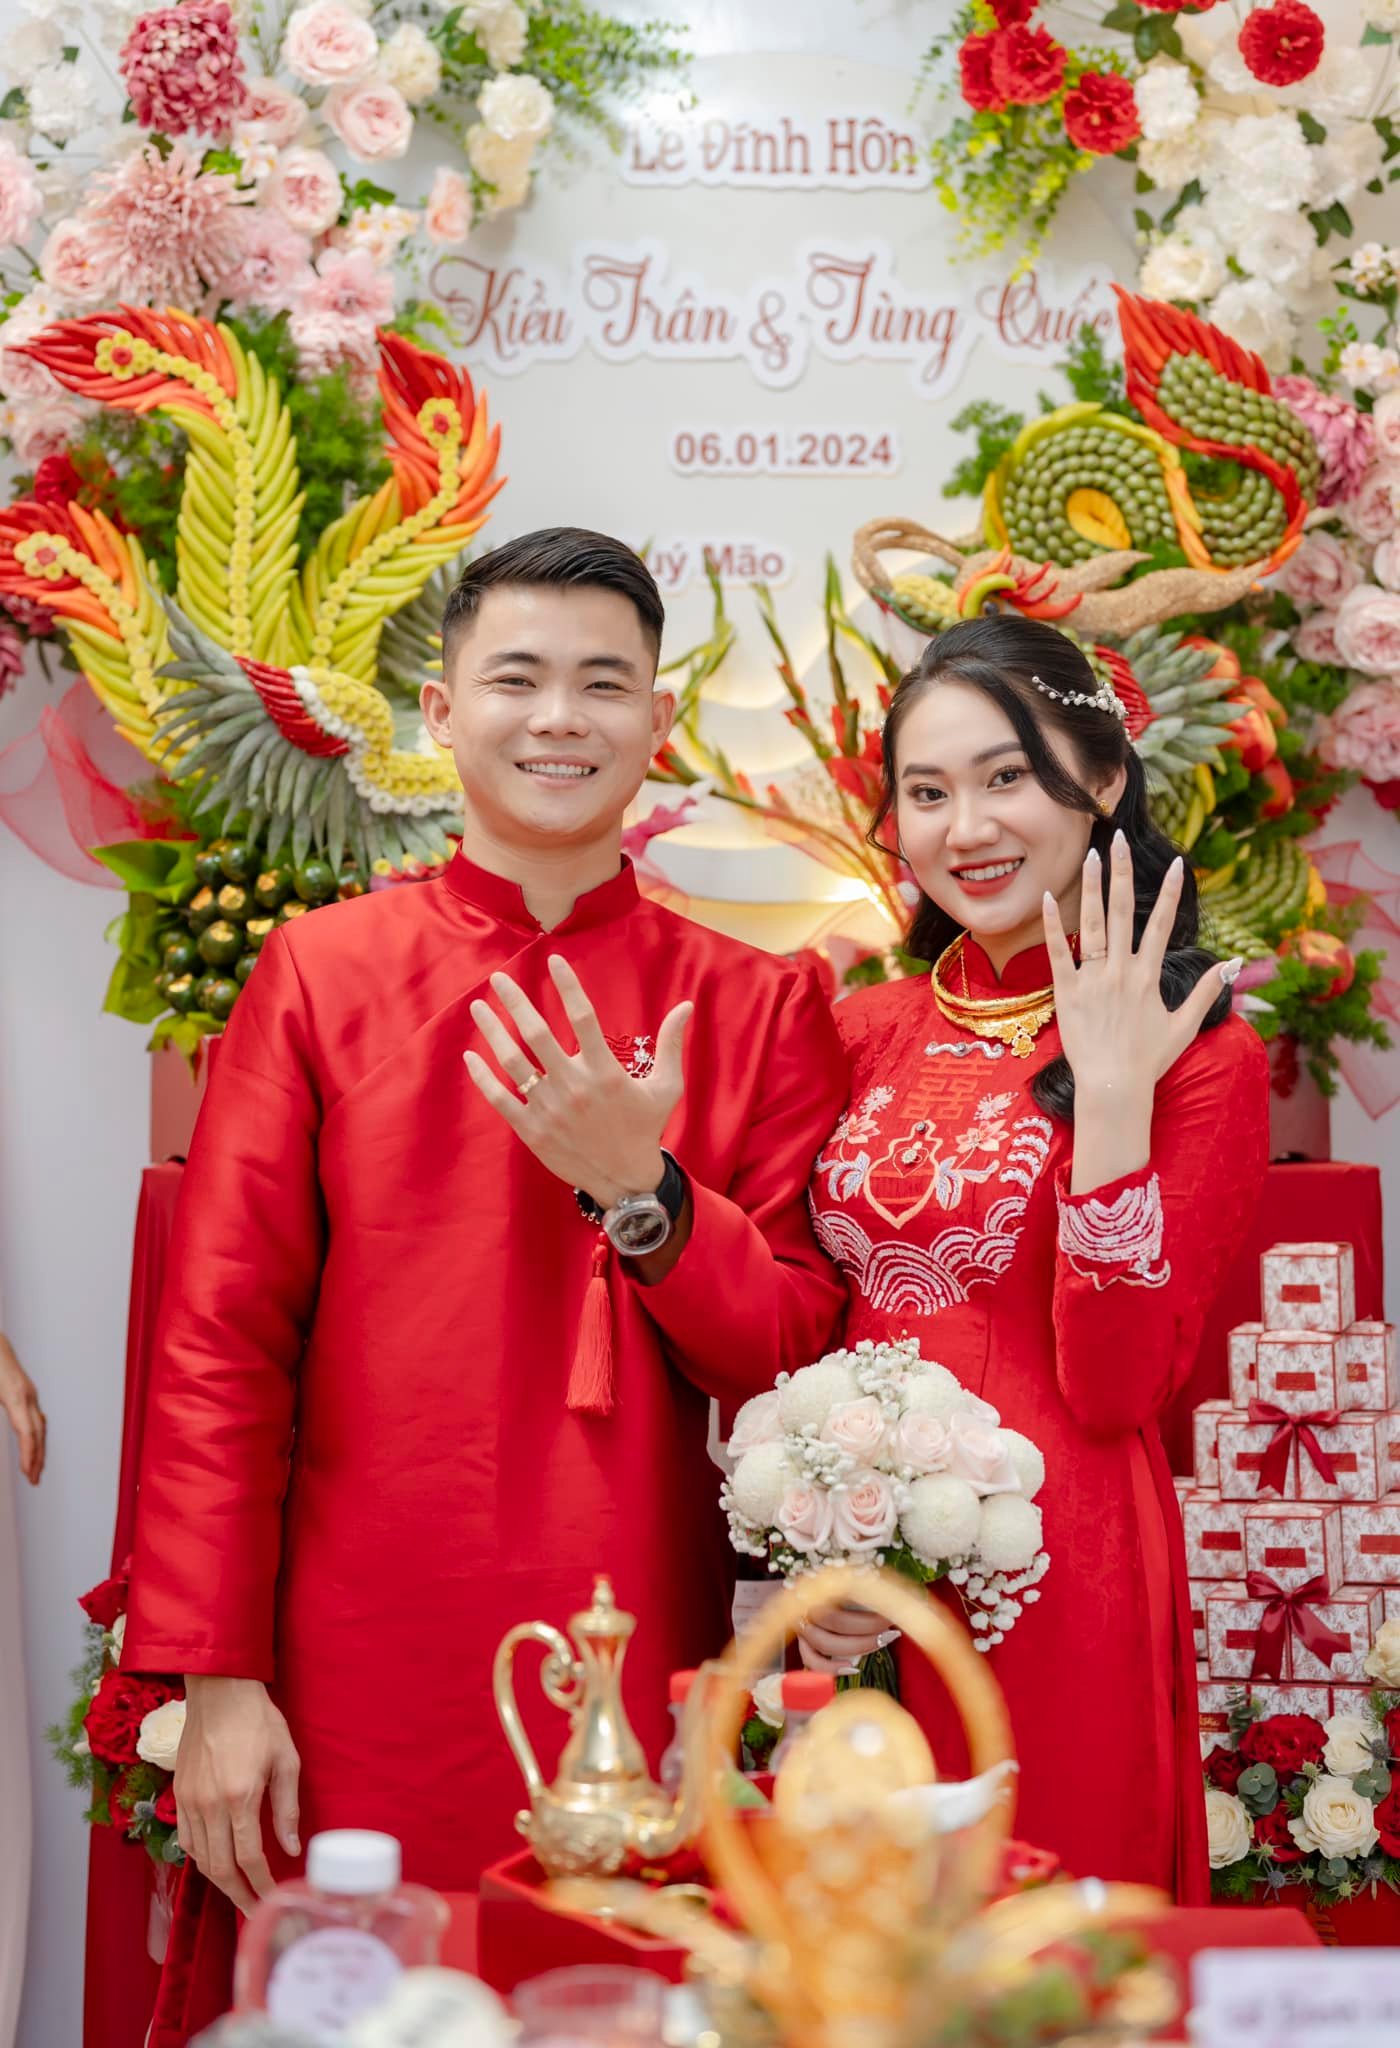 Hậu vệ đội tuyển Việt Nam tình tứ hôn vợ trong lễ ăn hỏi- Ảnh 1.